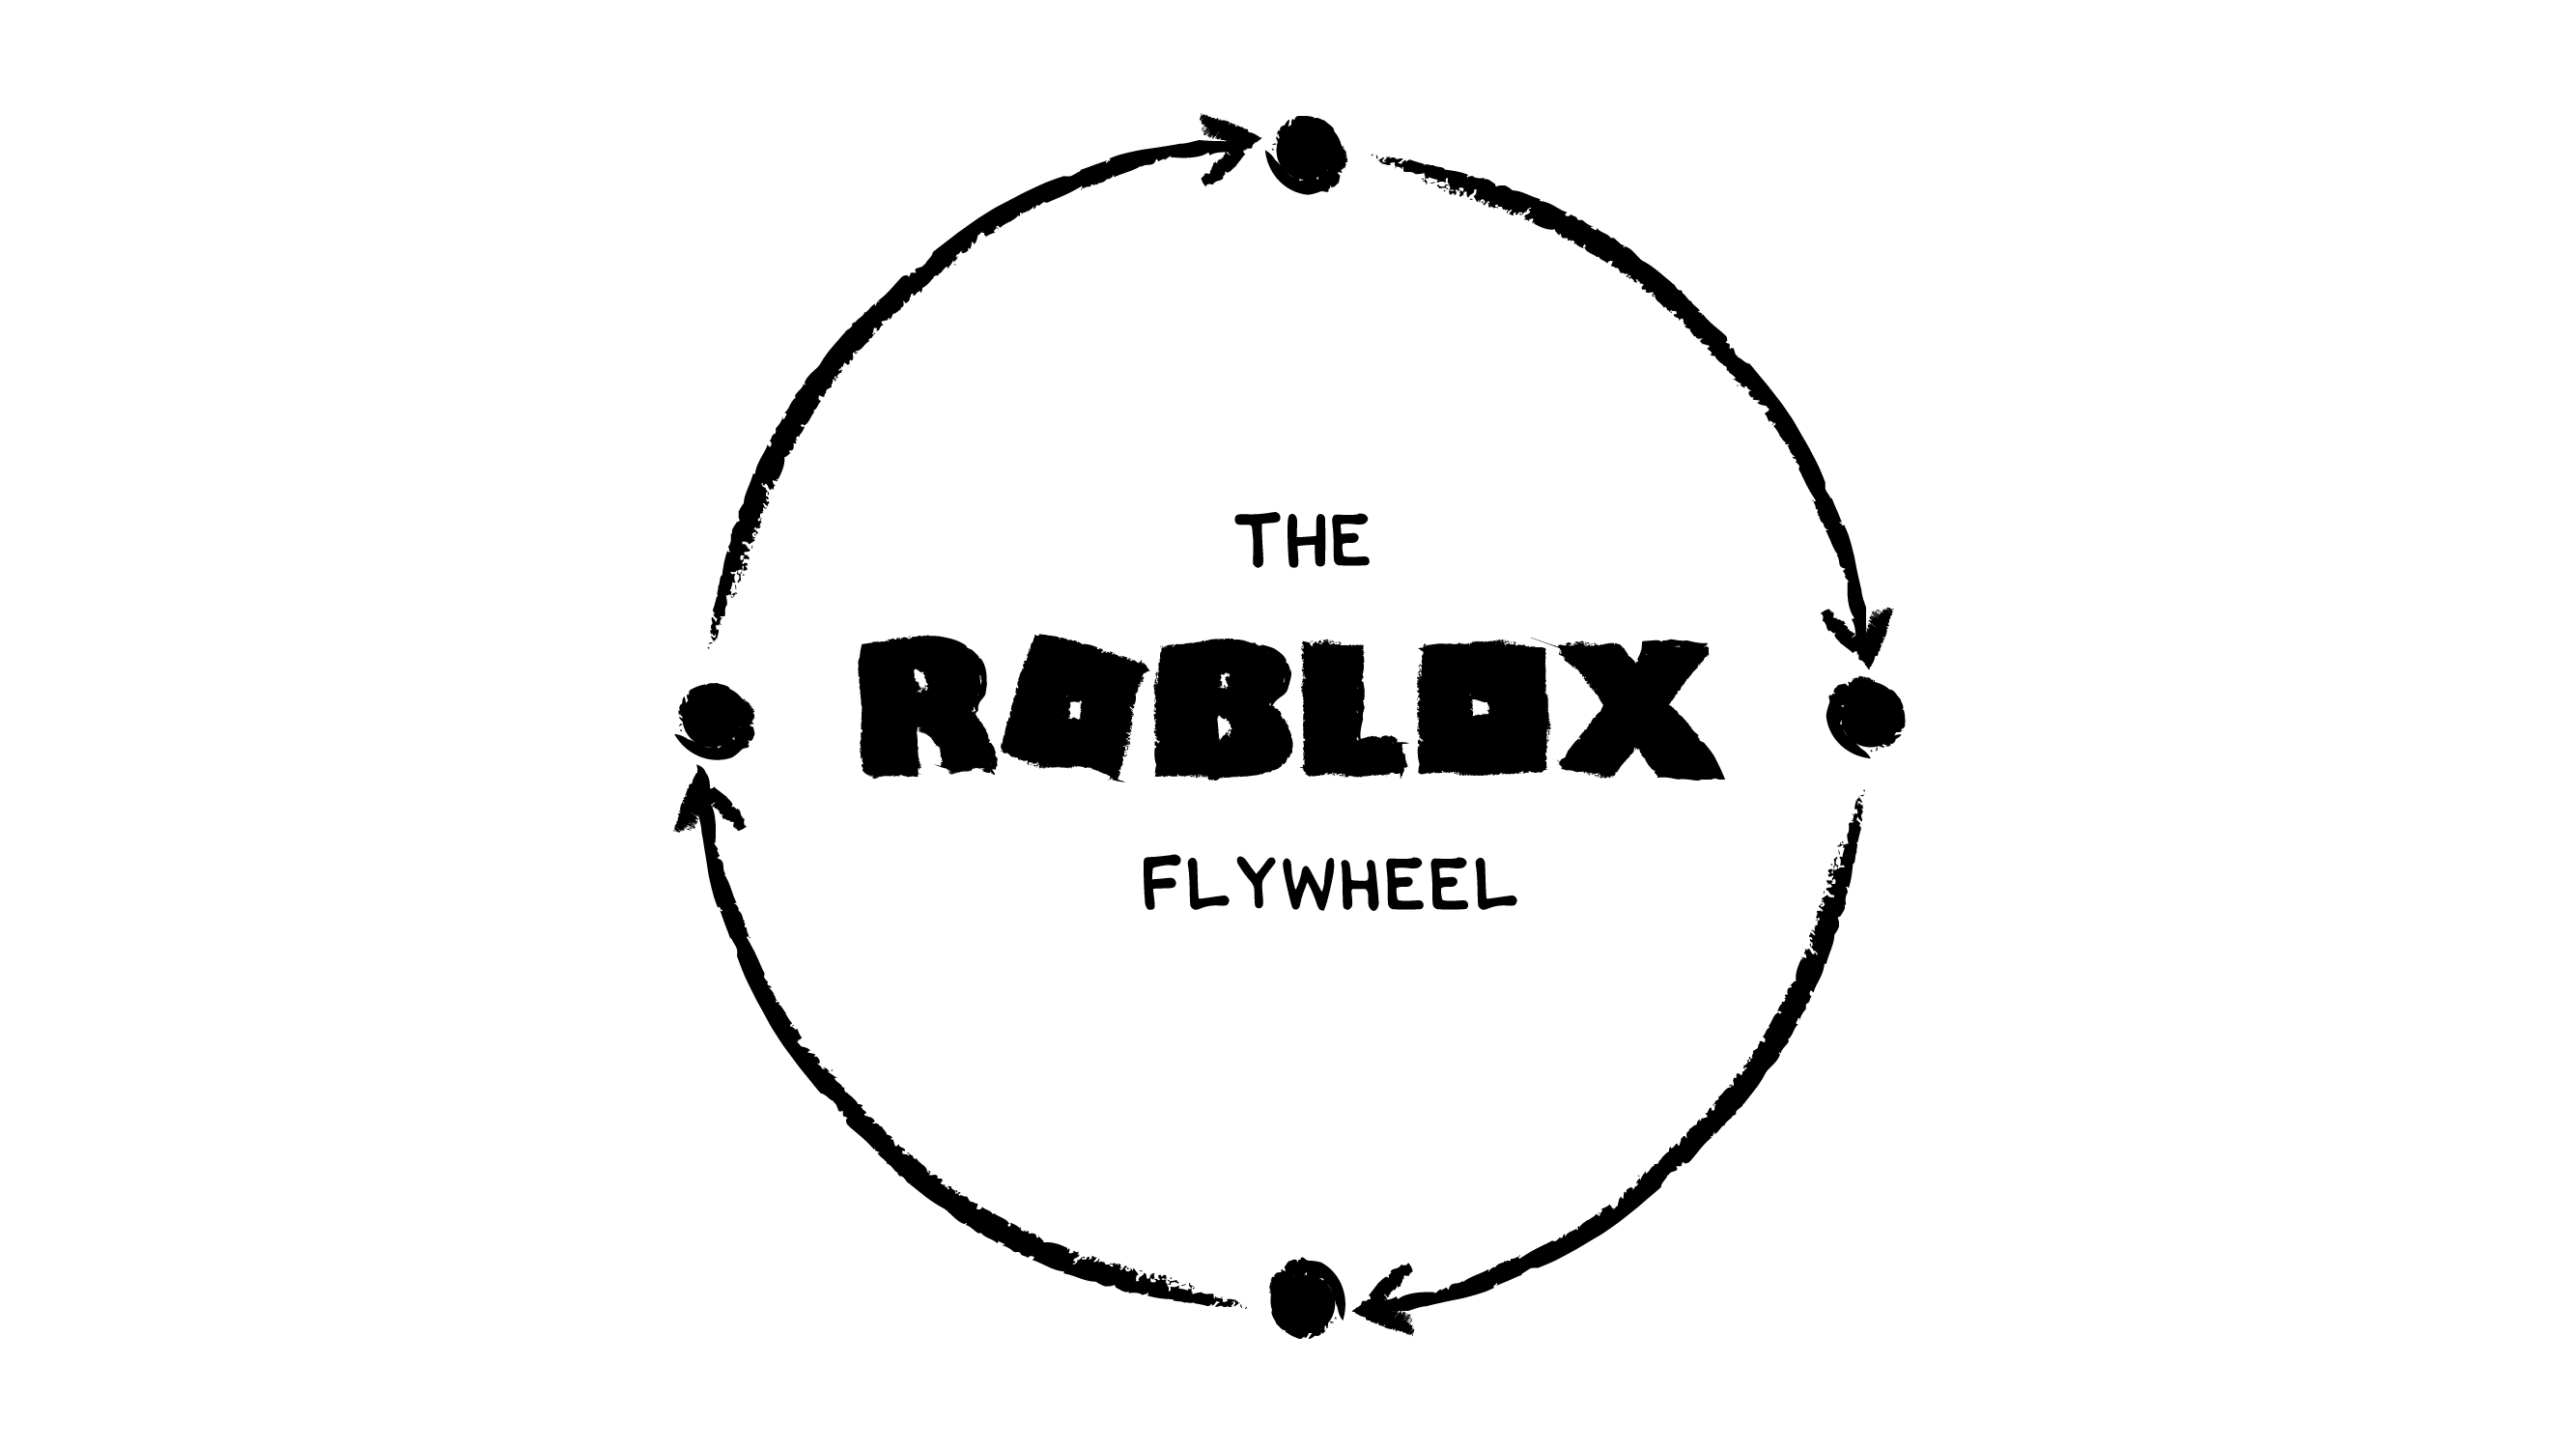 The Top 5 Hidden Dangers of Roblox